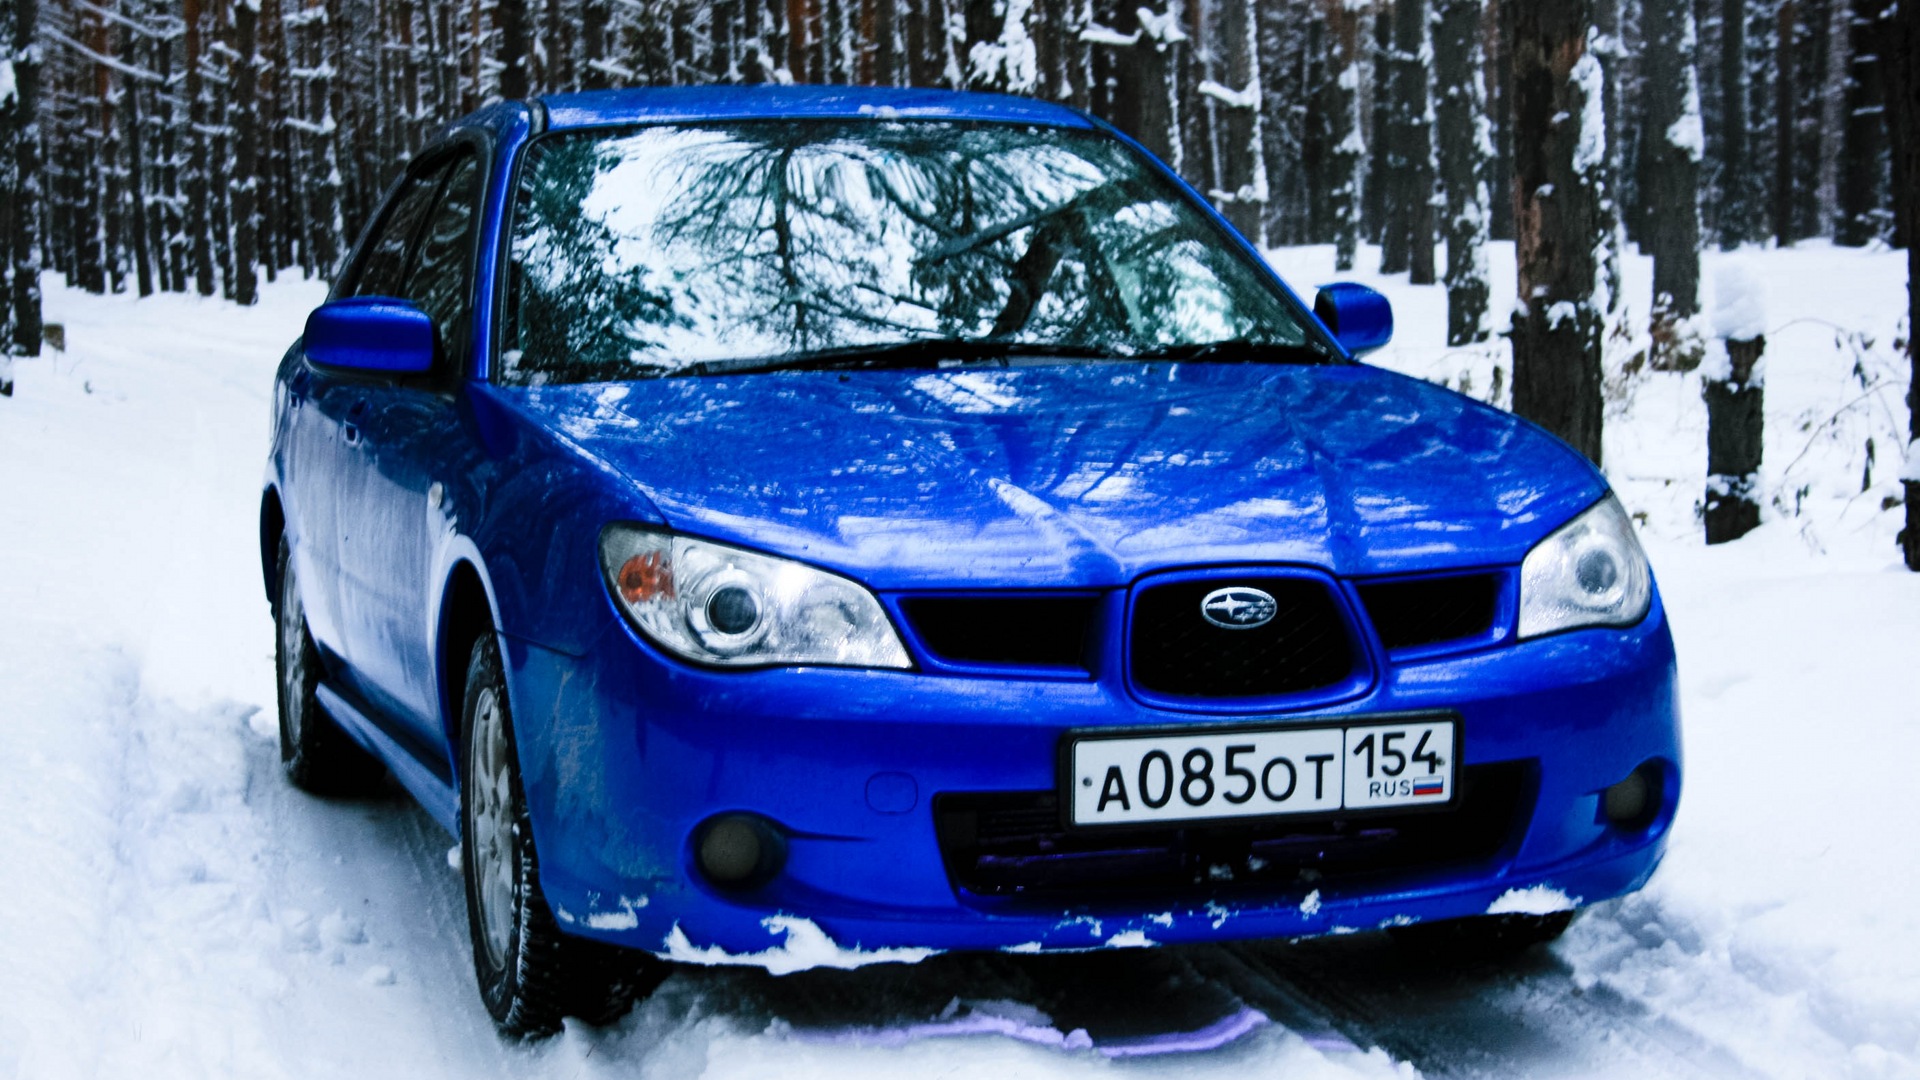 Купить субару в нижнем новгороде. Субару зимой. Субару леса. Subaru в лесу. Субару Импреза синий Лис драйв2.